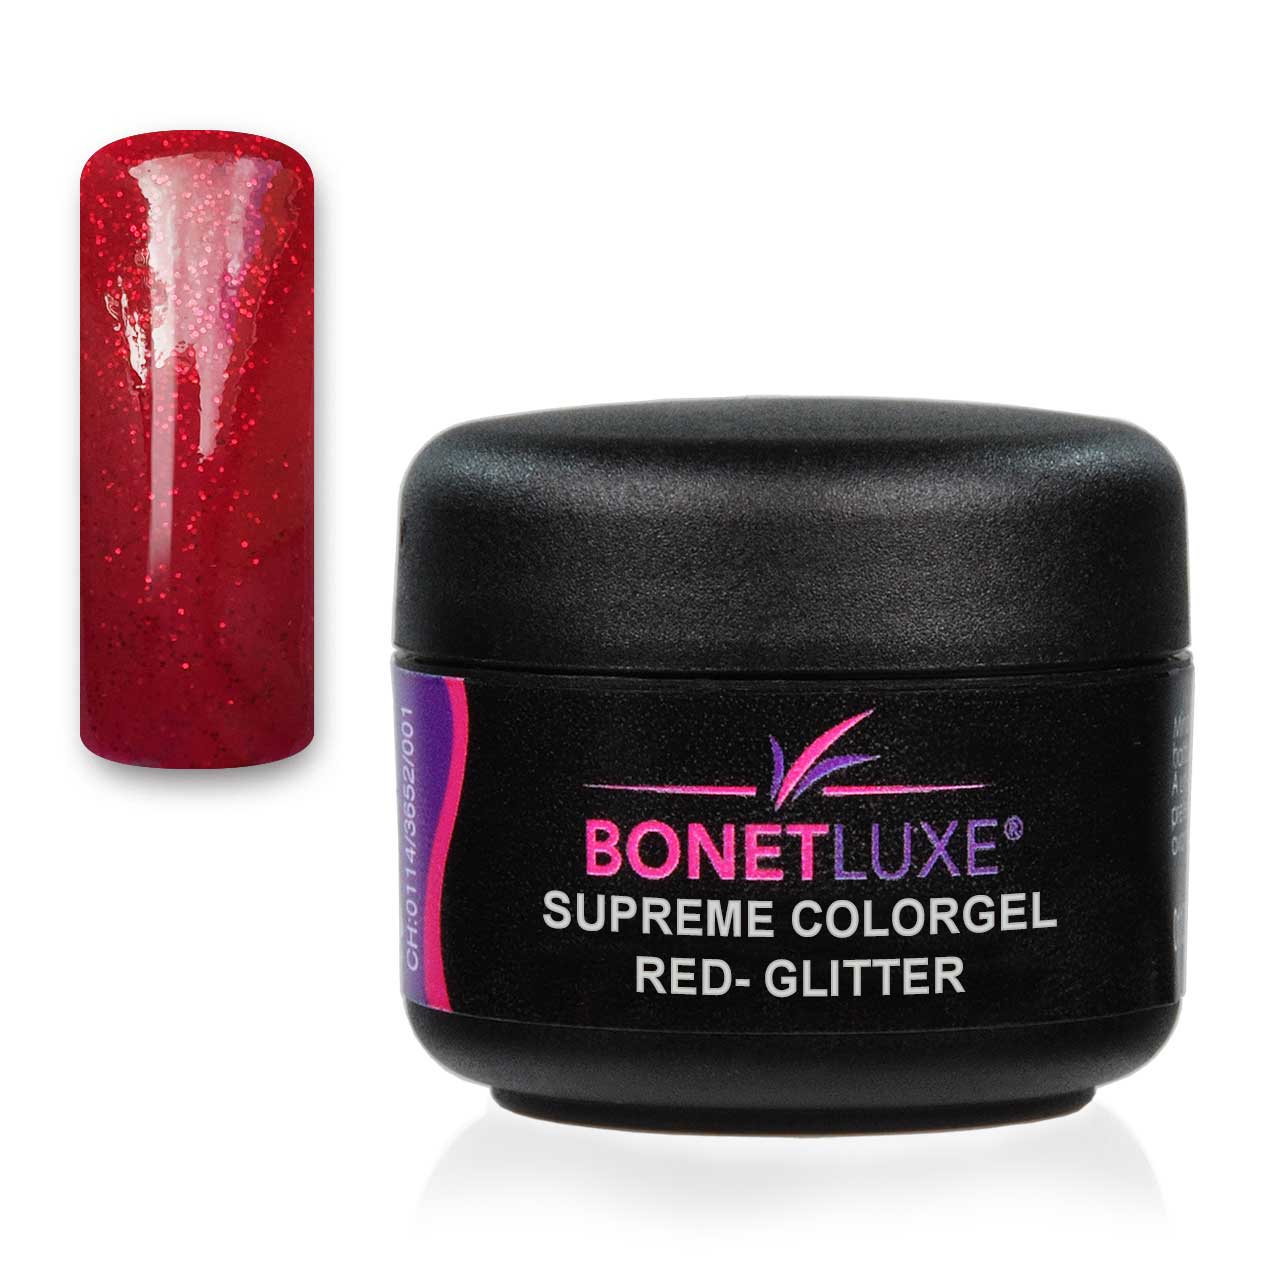 Bonetluxe Supreme Colorgel Red-Glitter